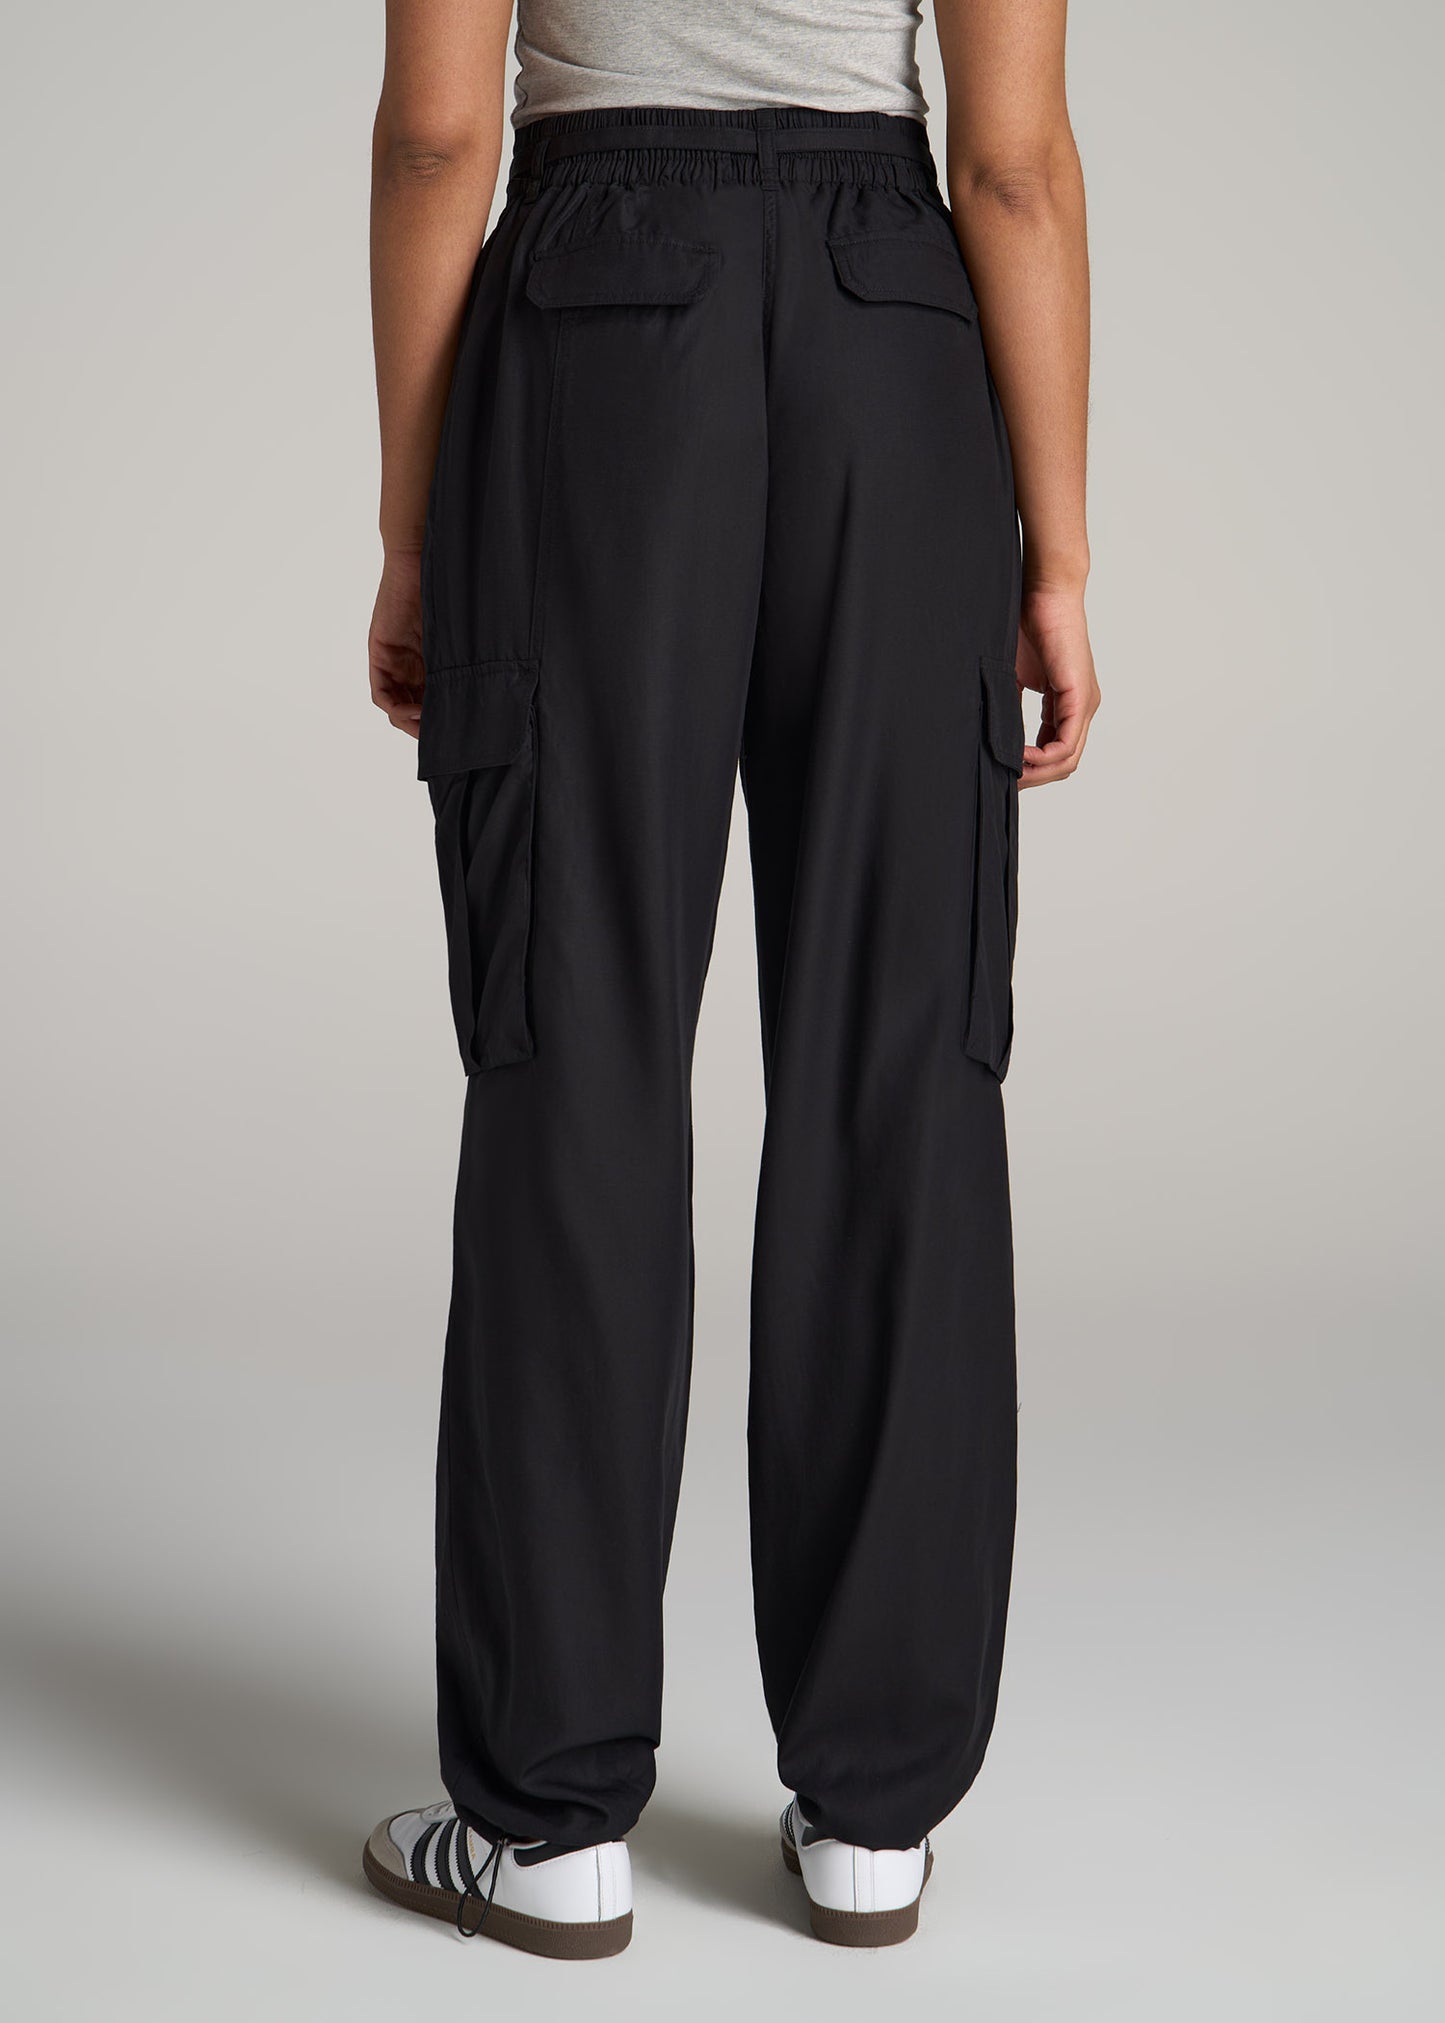 Zara Parachute Pants XS  Clothes design, Zara, Zara women